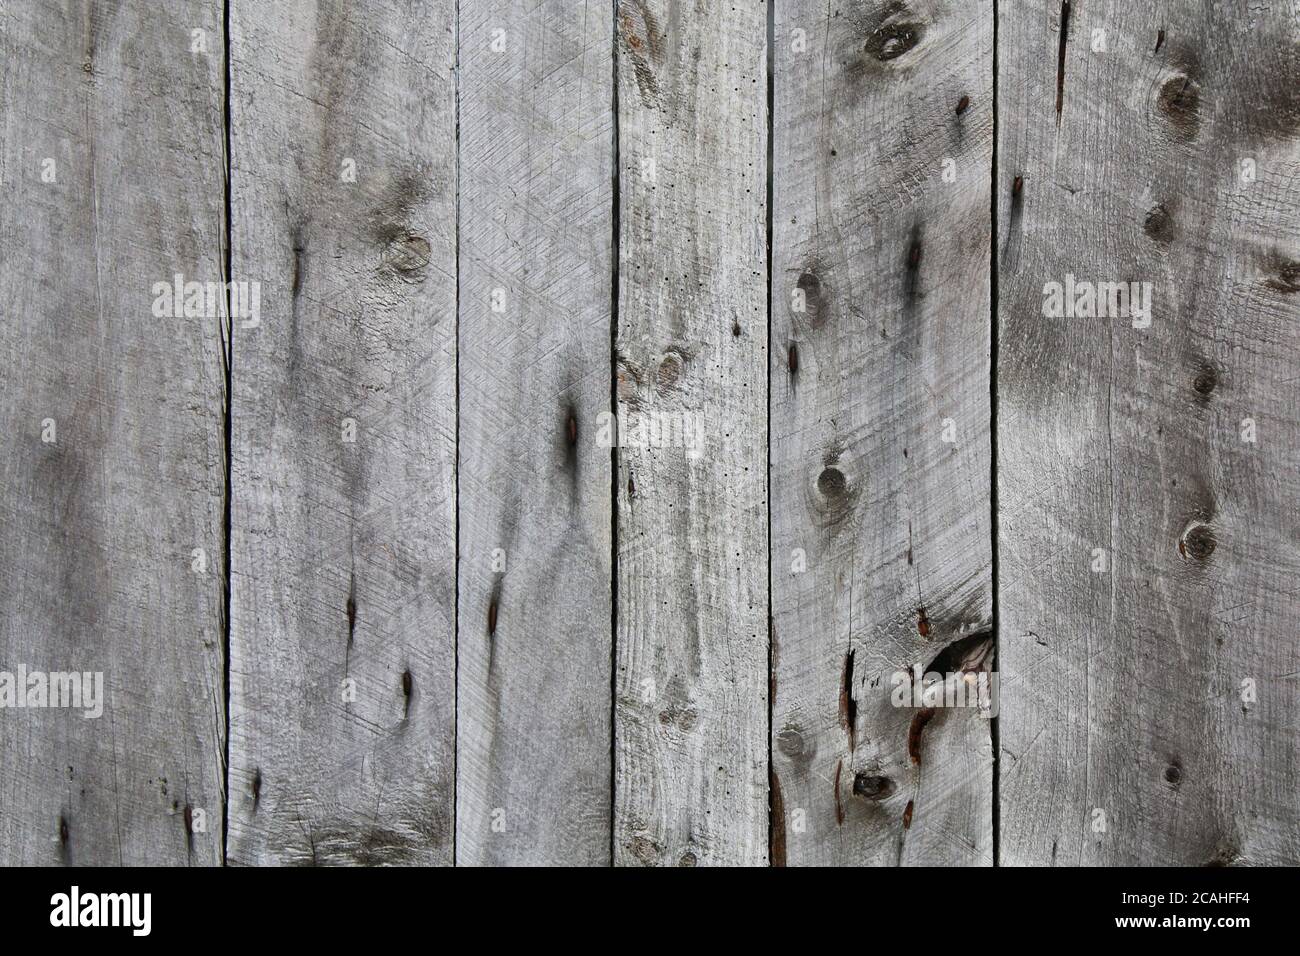 Natürliche alte vintage knotty verwitterte alte Holz Zaun Board vertikal Ansicht geeignet für Website Hintergrund Marketing Hintergründe Backdrops Architektur Stockfoto